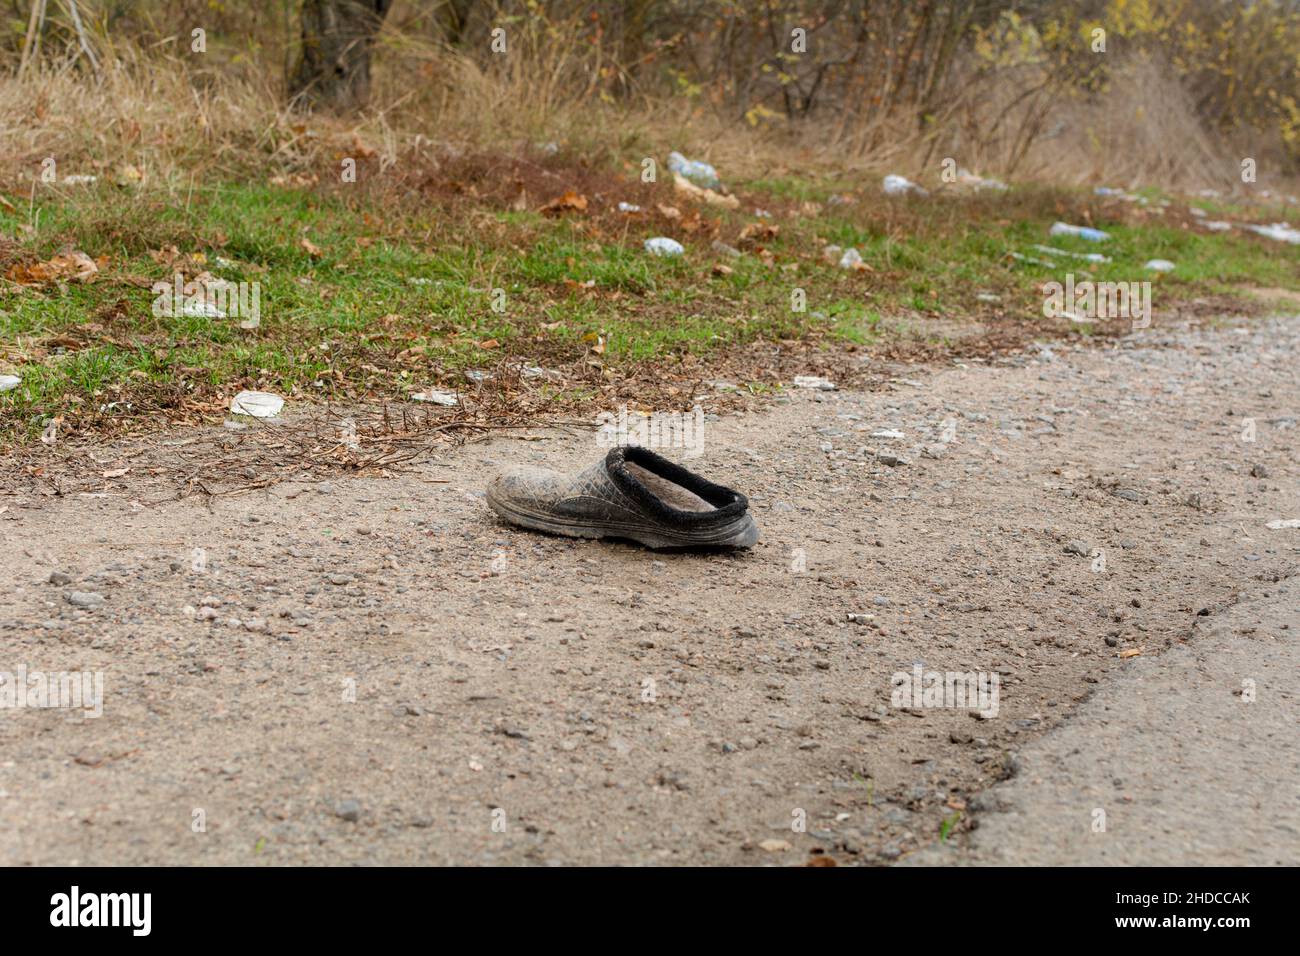 Odessa regione, Ucraina - 7 novembre 2021 spazzatura lungo la strada, plastica, bottiglie, sacchetti. Concetto ambientale. Salvare il pianeta. Foto Stock